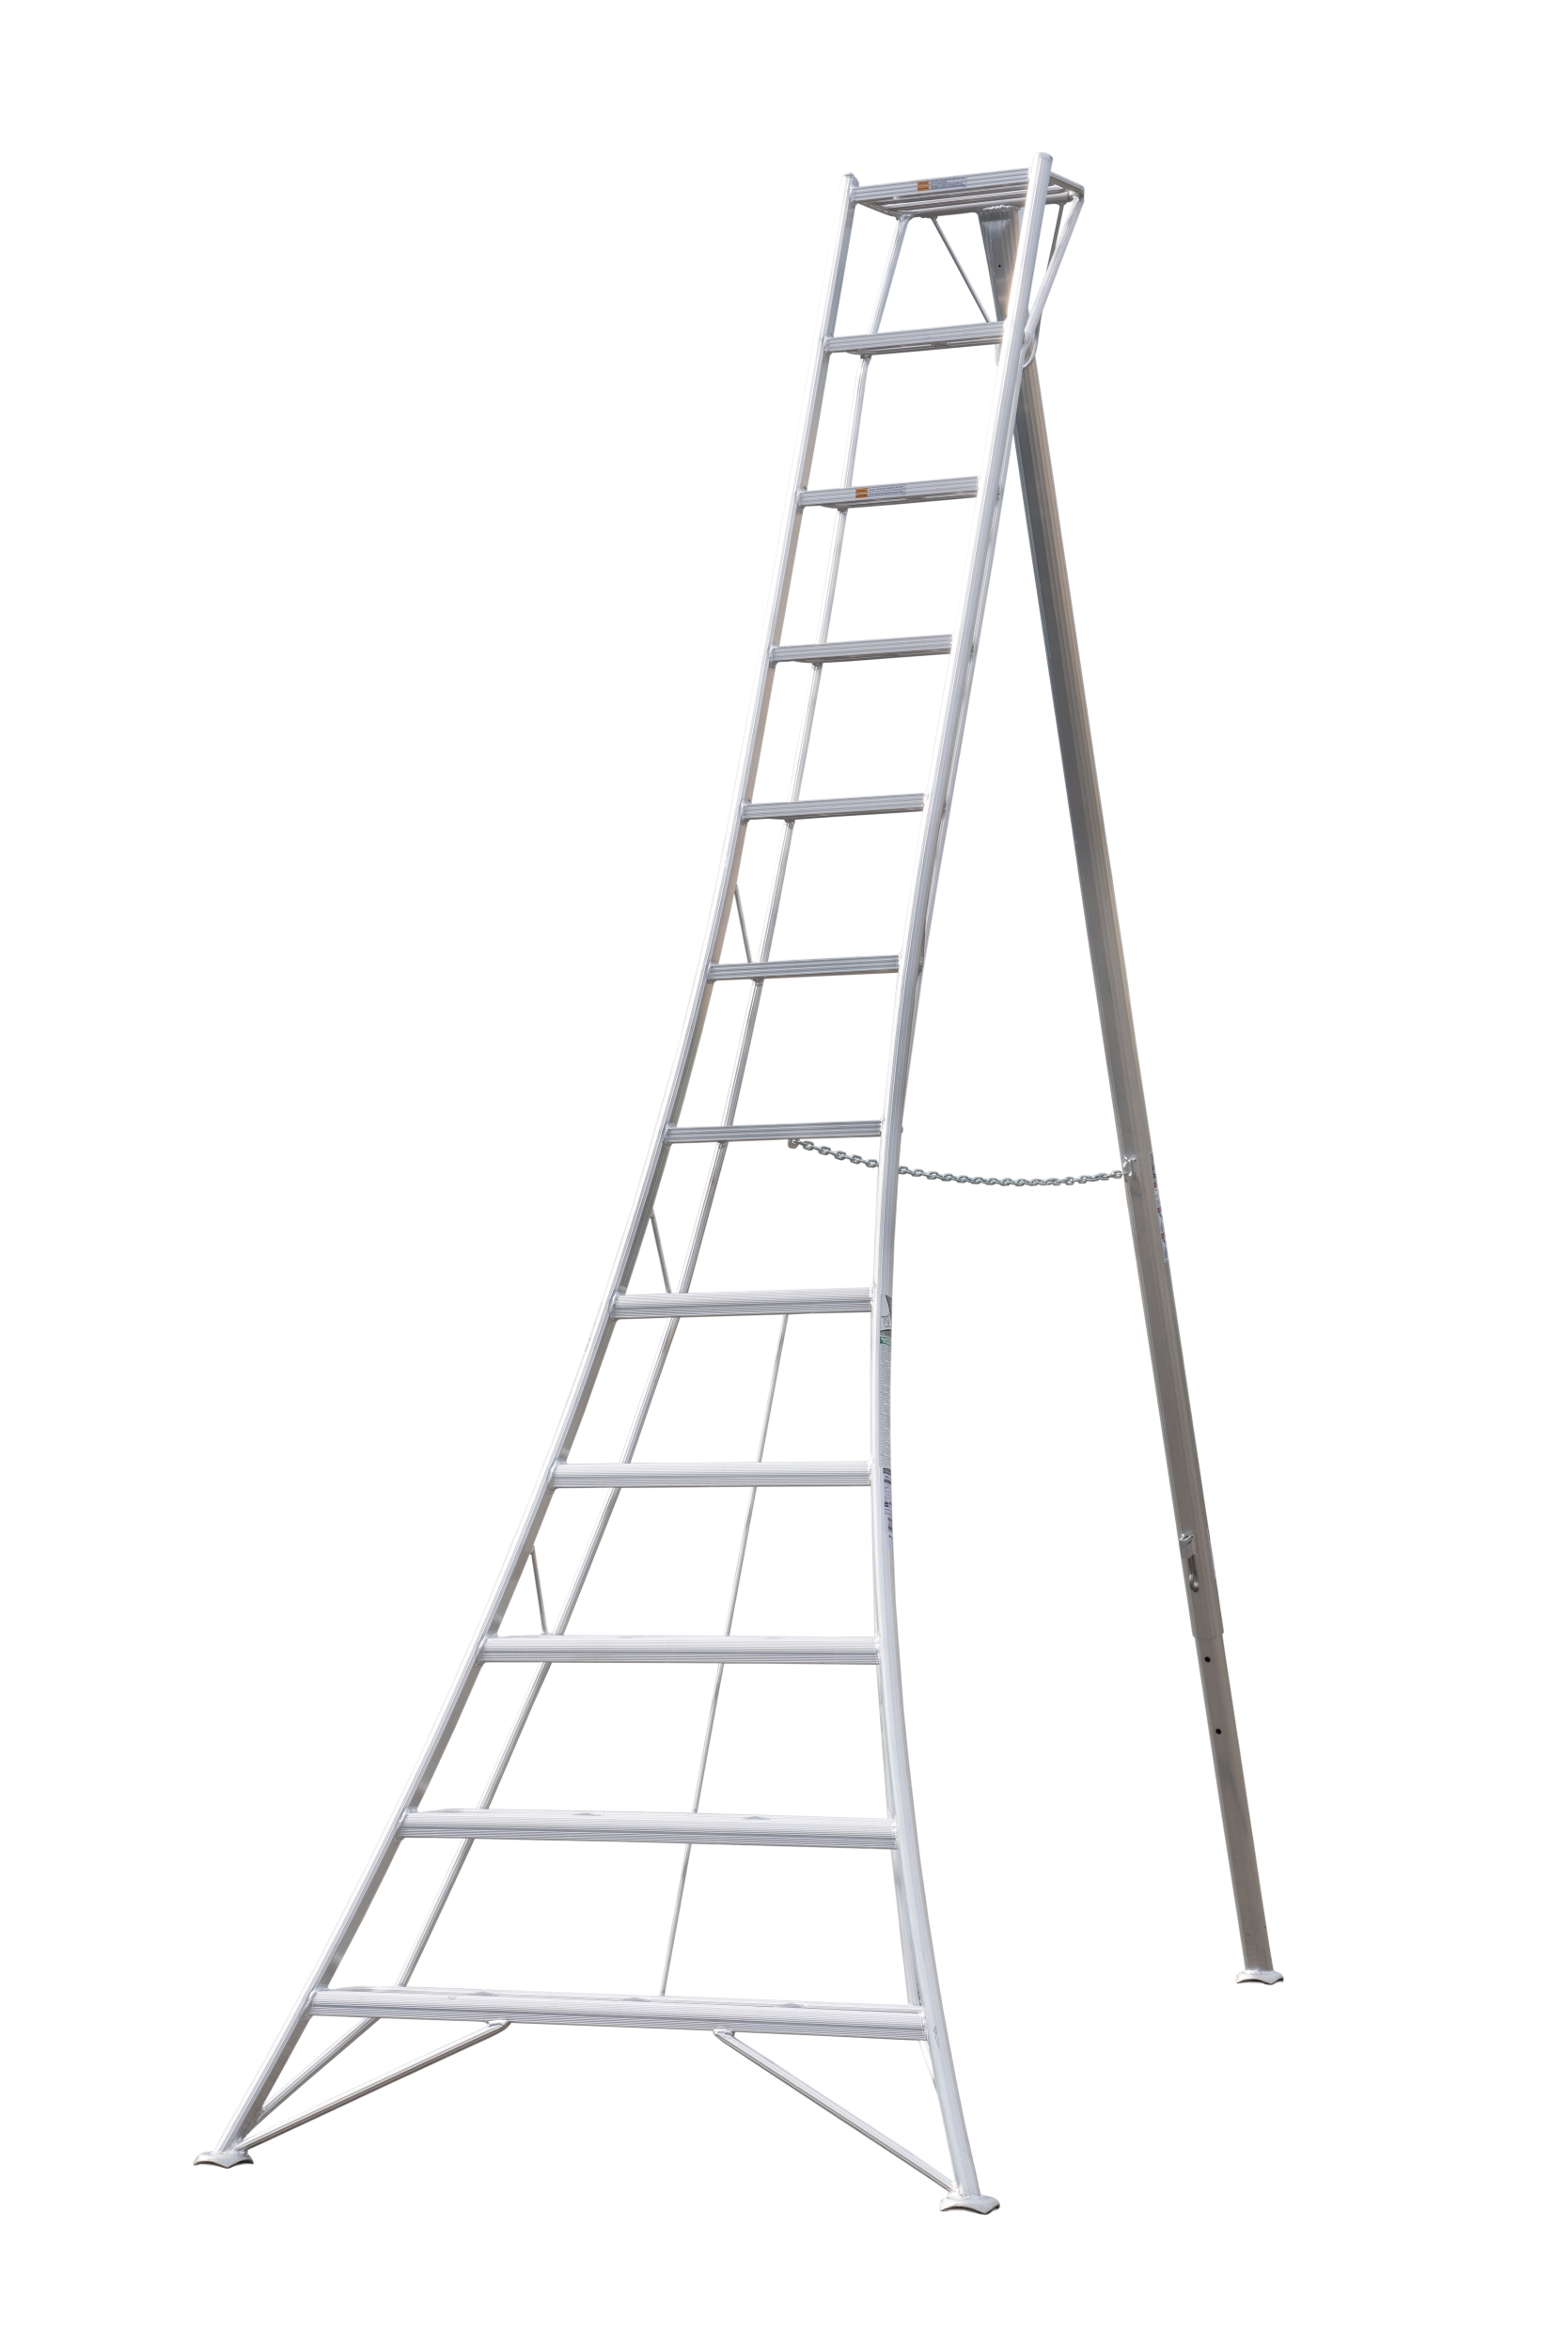 Ladder 12 ft Standard Tripod 39 lbs Hasegawa - Ladders